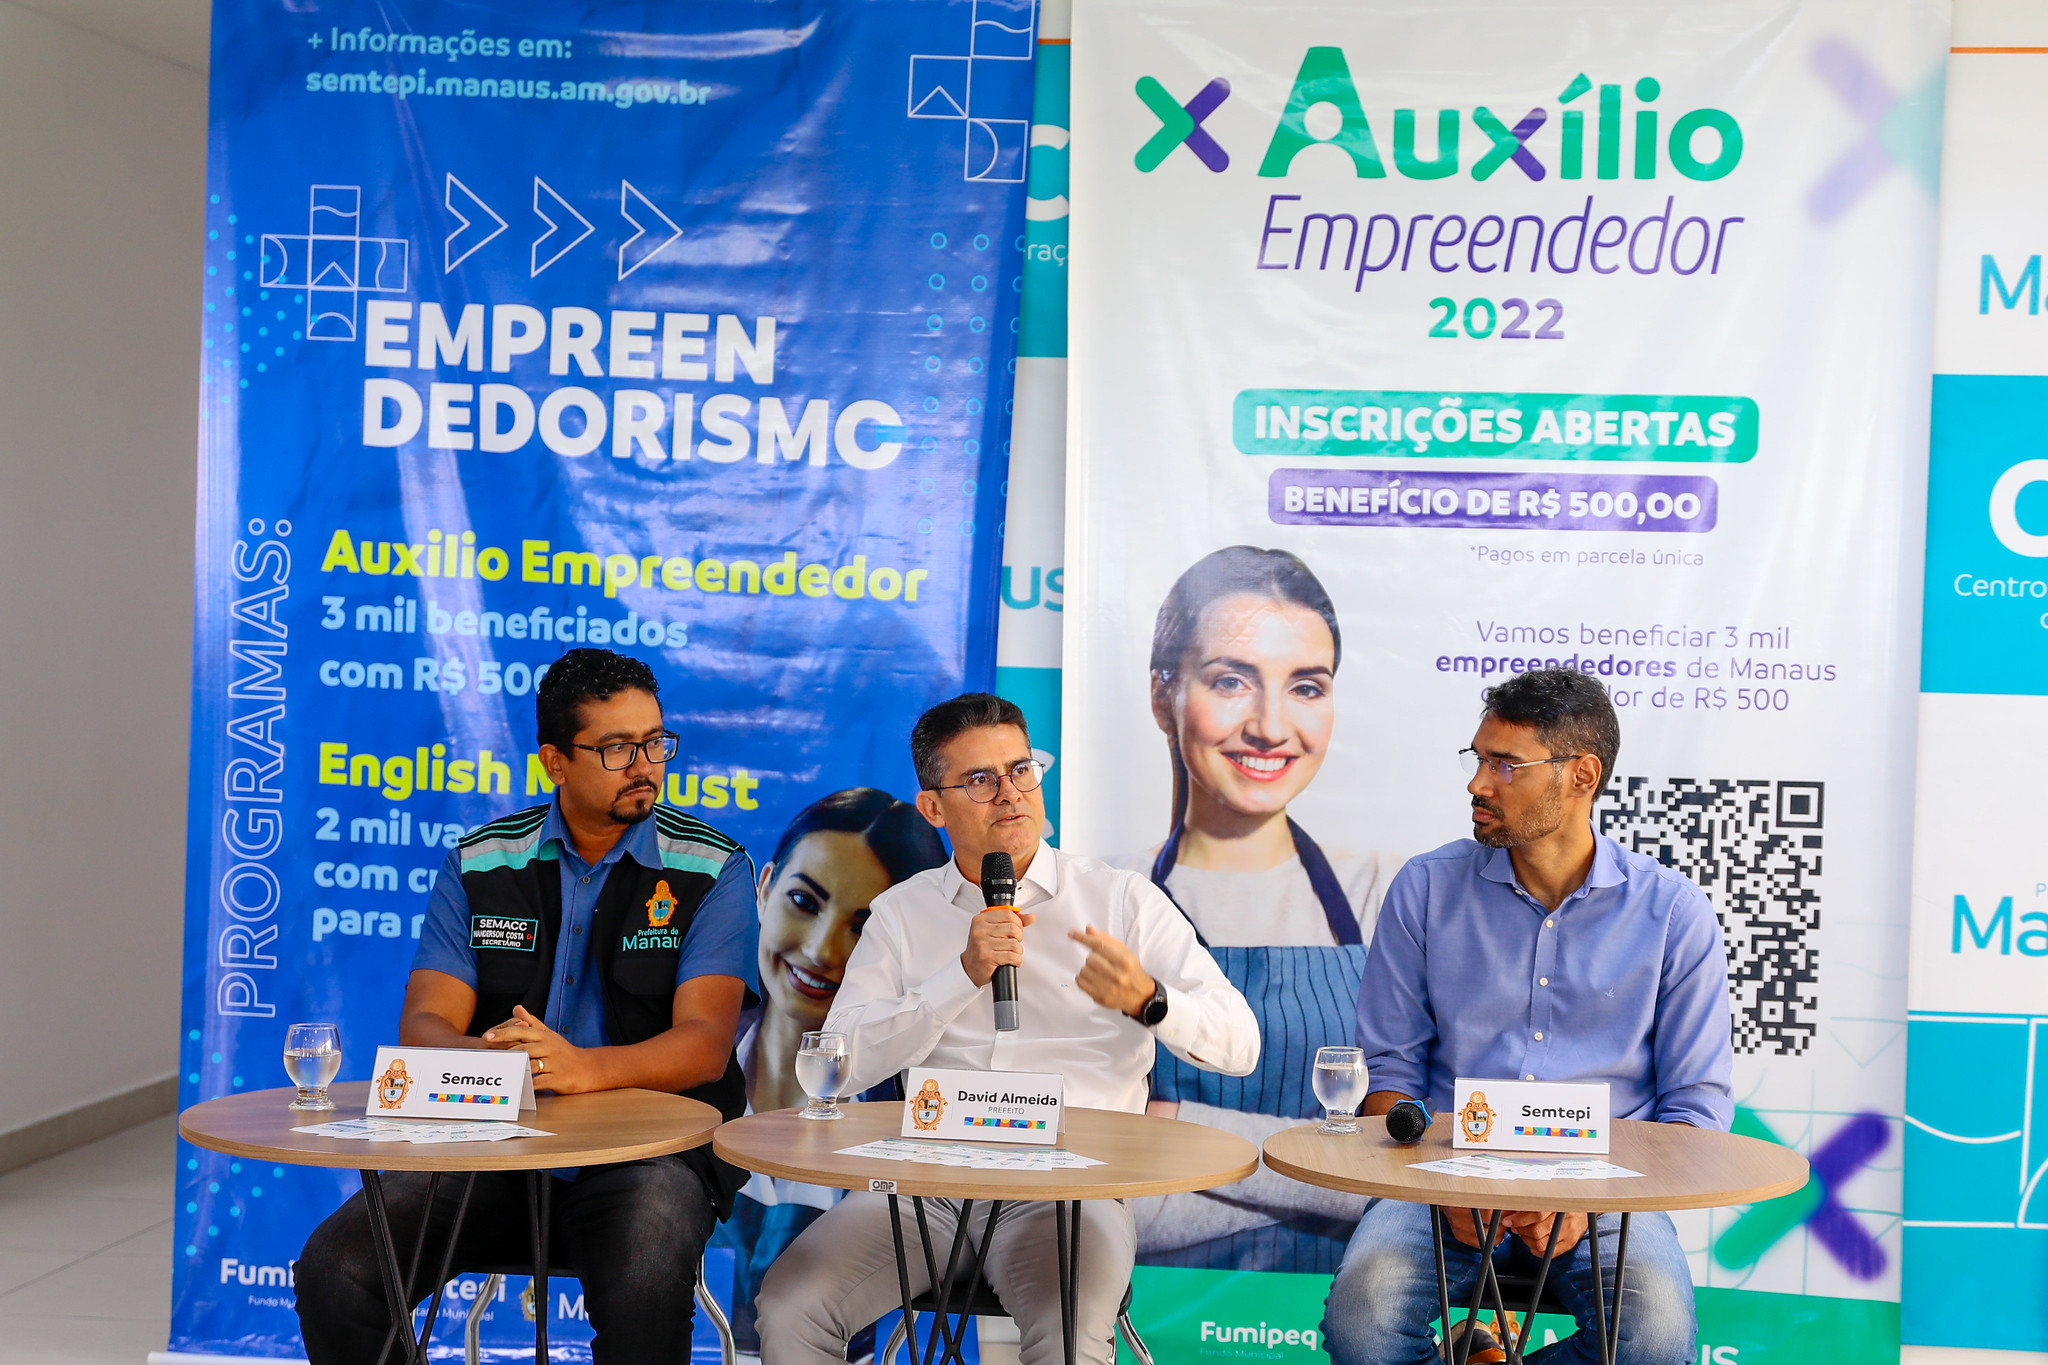 “Auxílio Empreendedor”, que vai beneficiar 3 mil empreendedores permissionários da capital, com o valor de R$ 500.